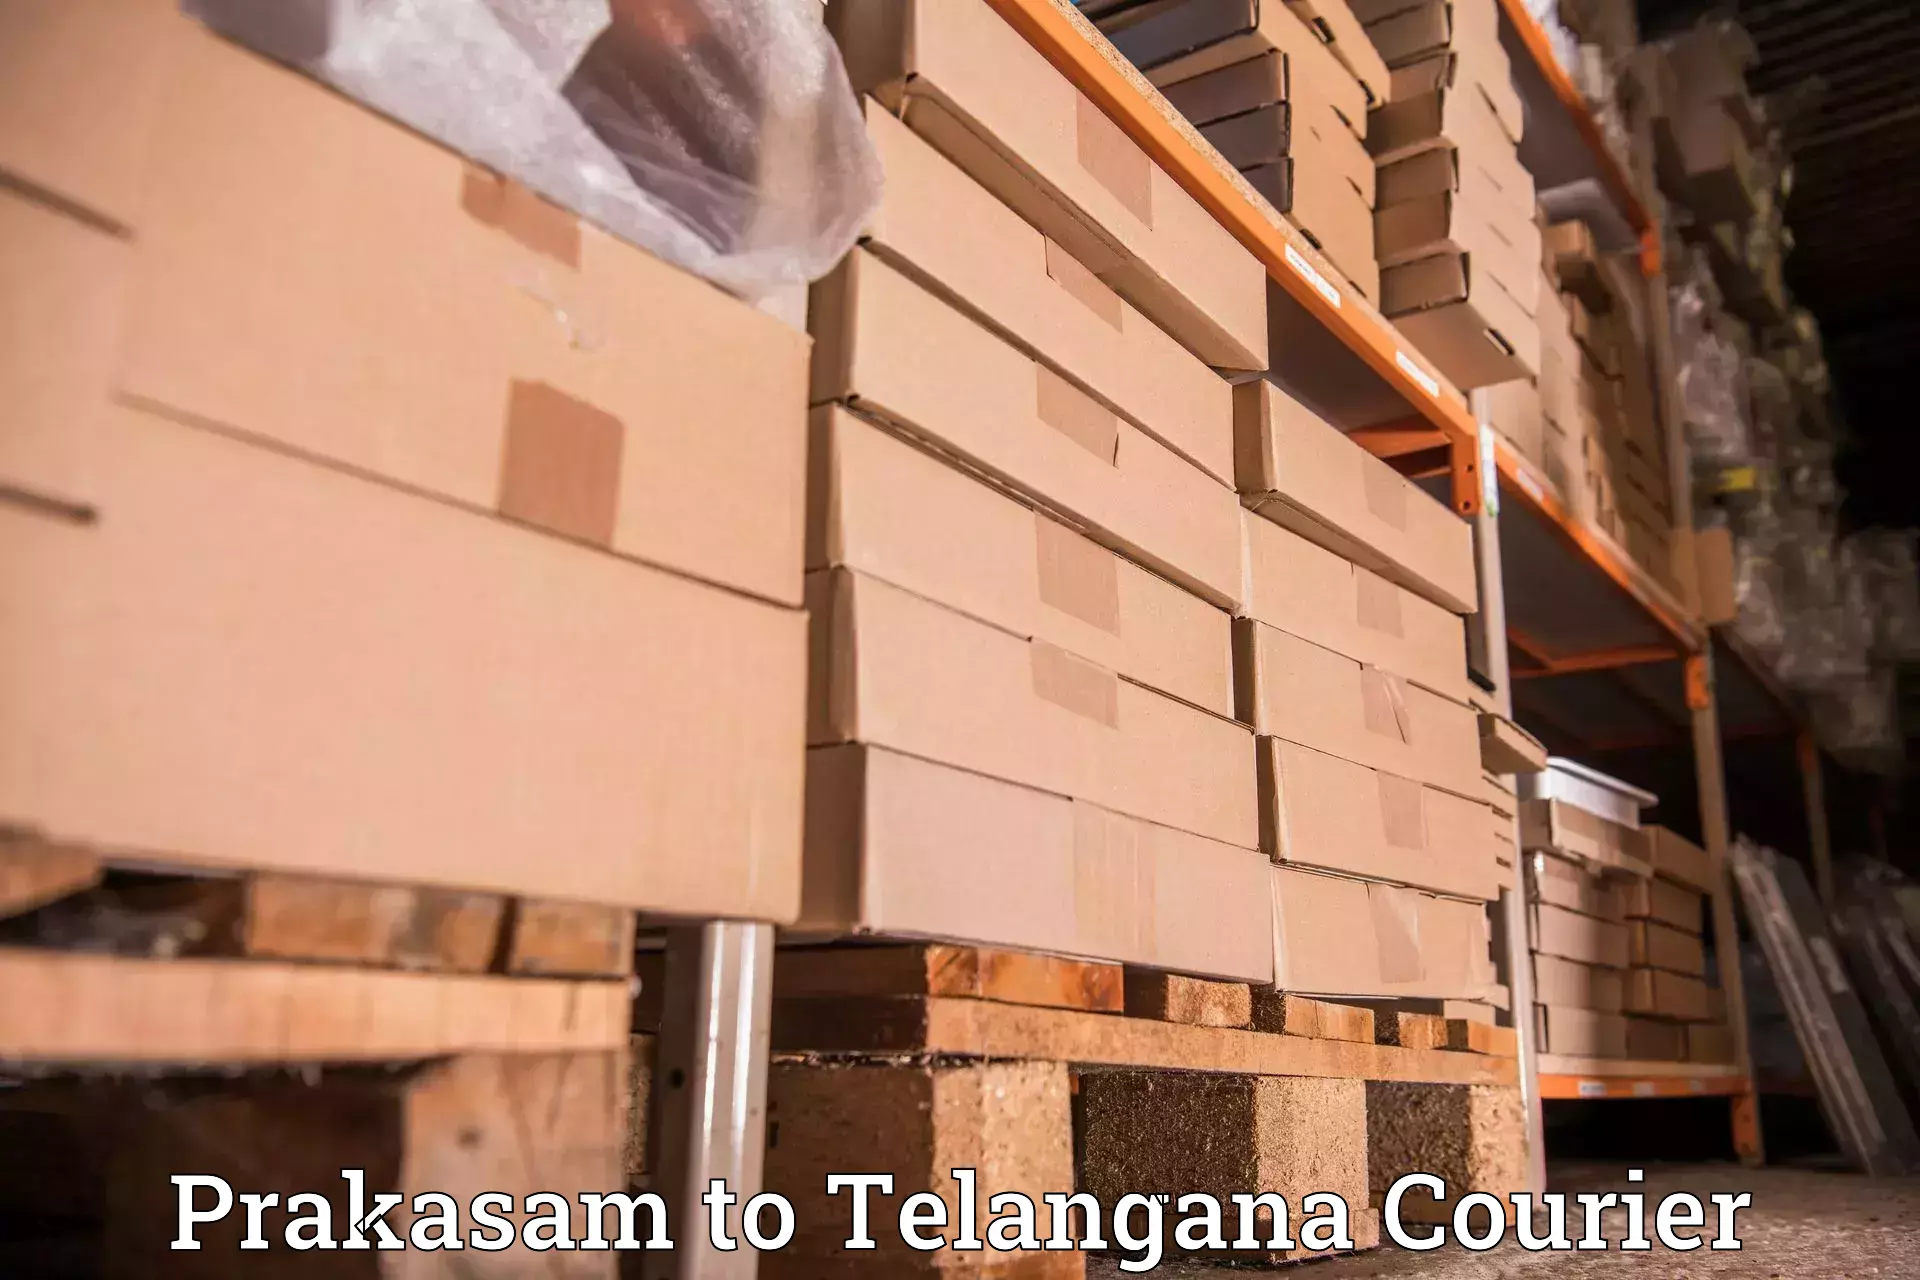 Cash on delivery service Prakasam to Mudigonda